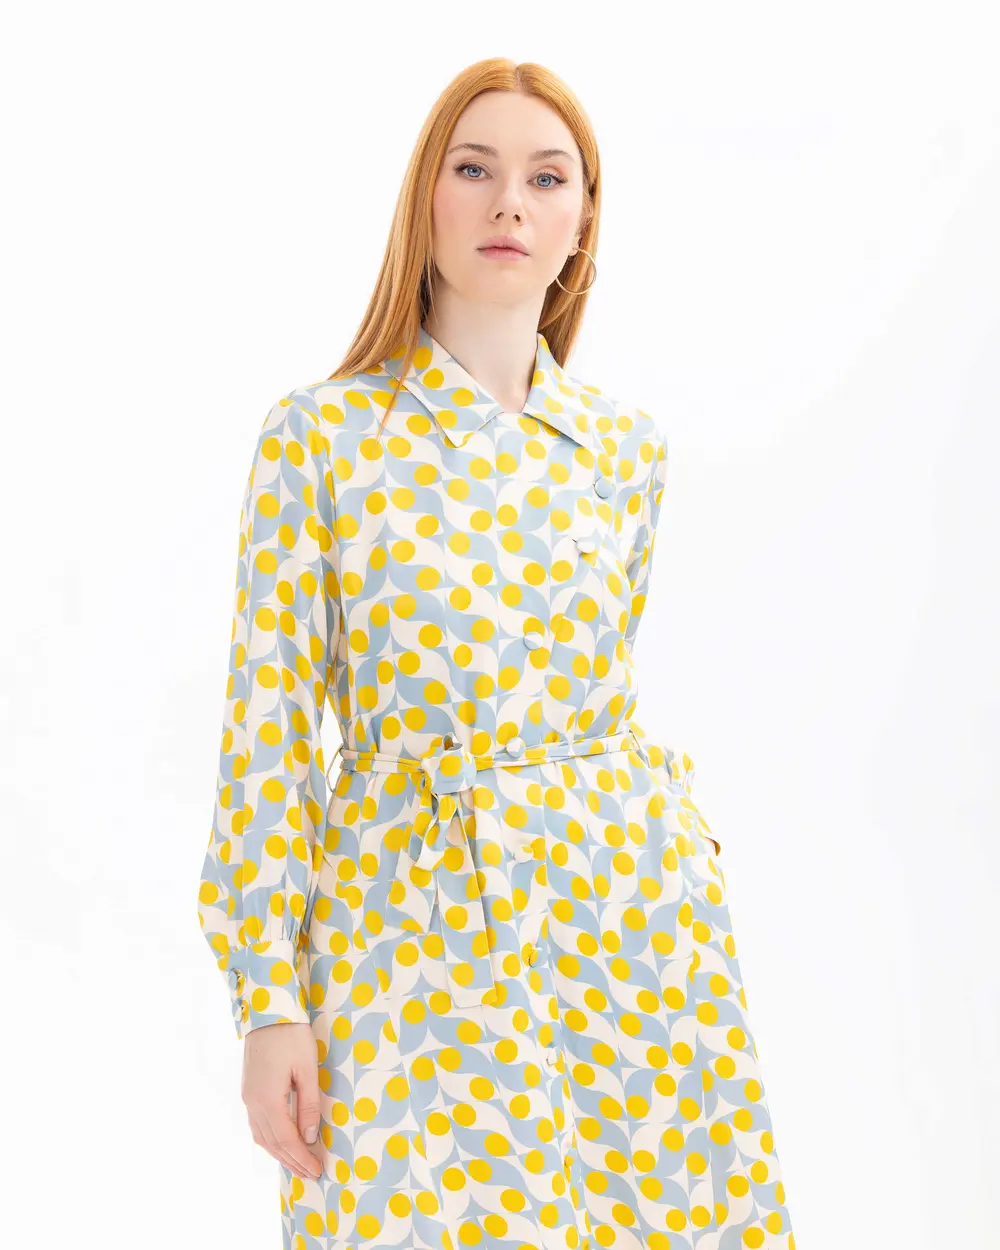 Geometric Patterned Pocket Detailed Belted Dress